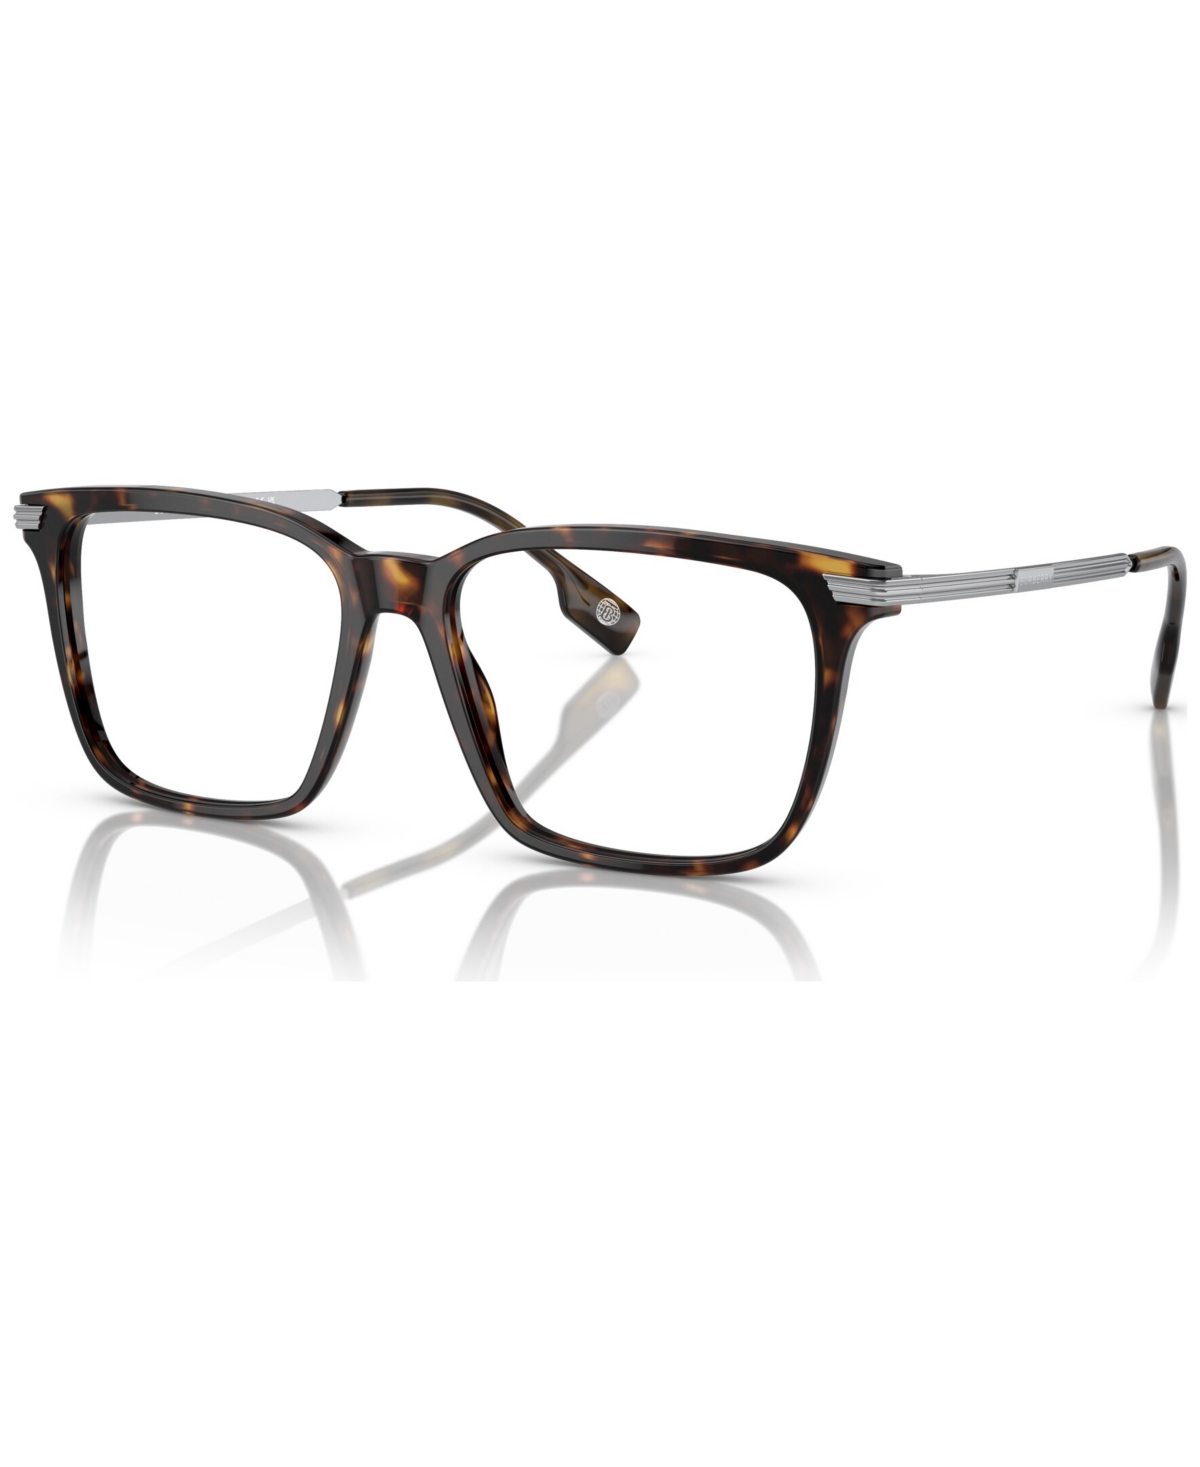 Men's Square Eyeglasses, BE2378 55 - Dark Havana